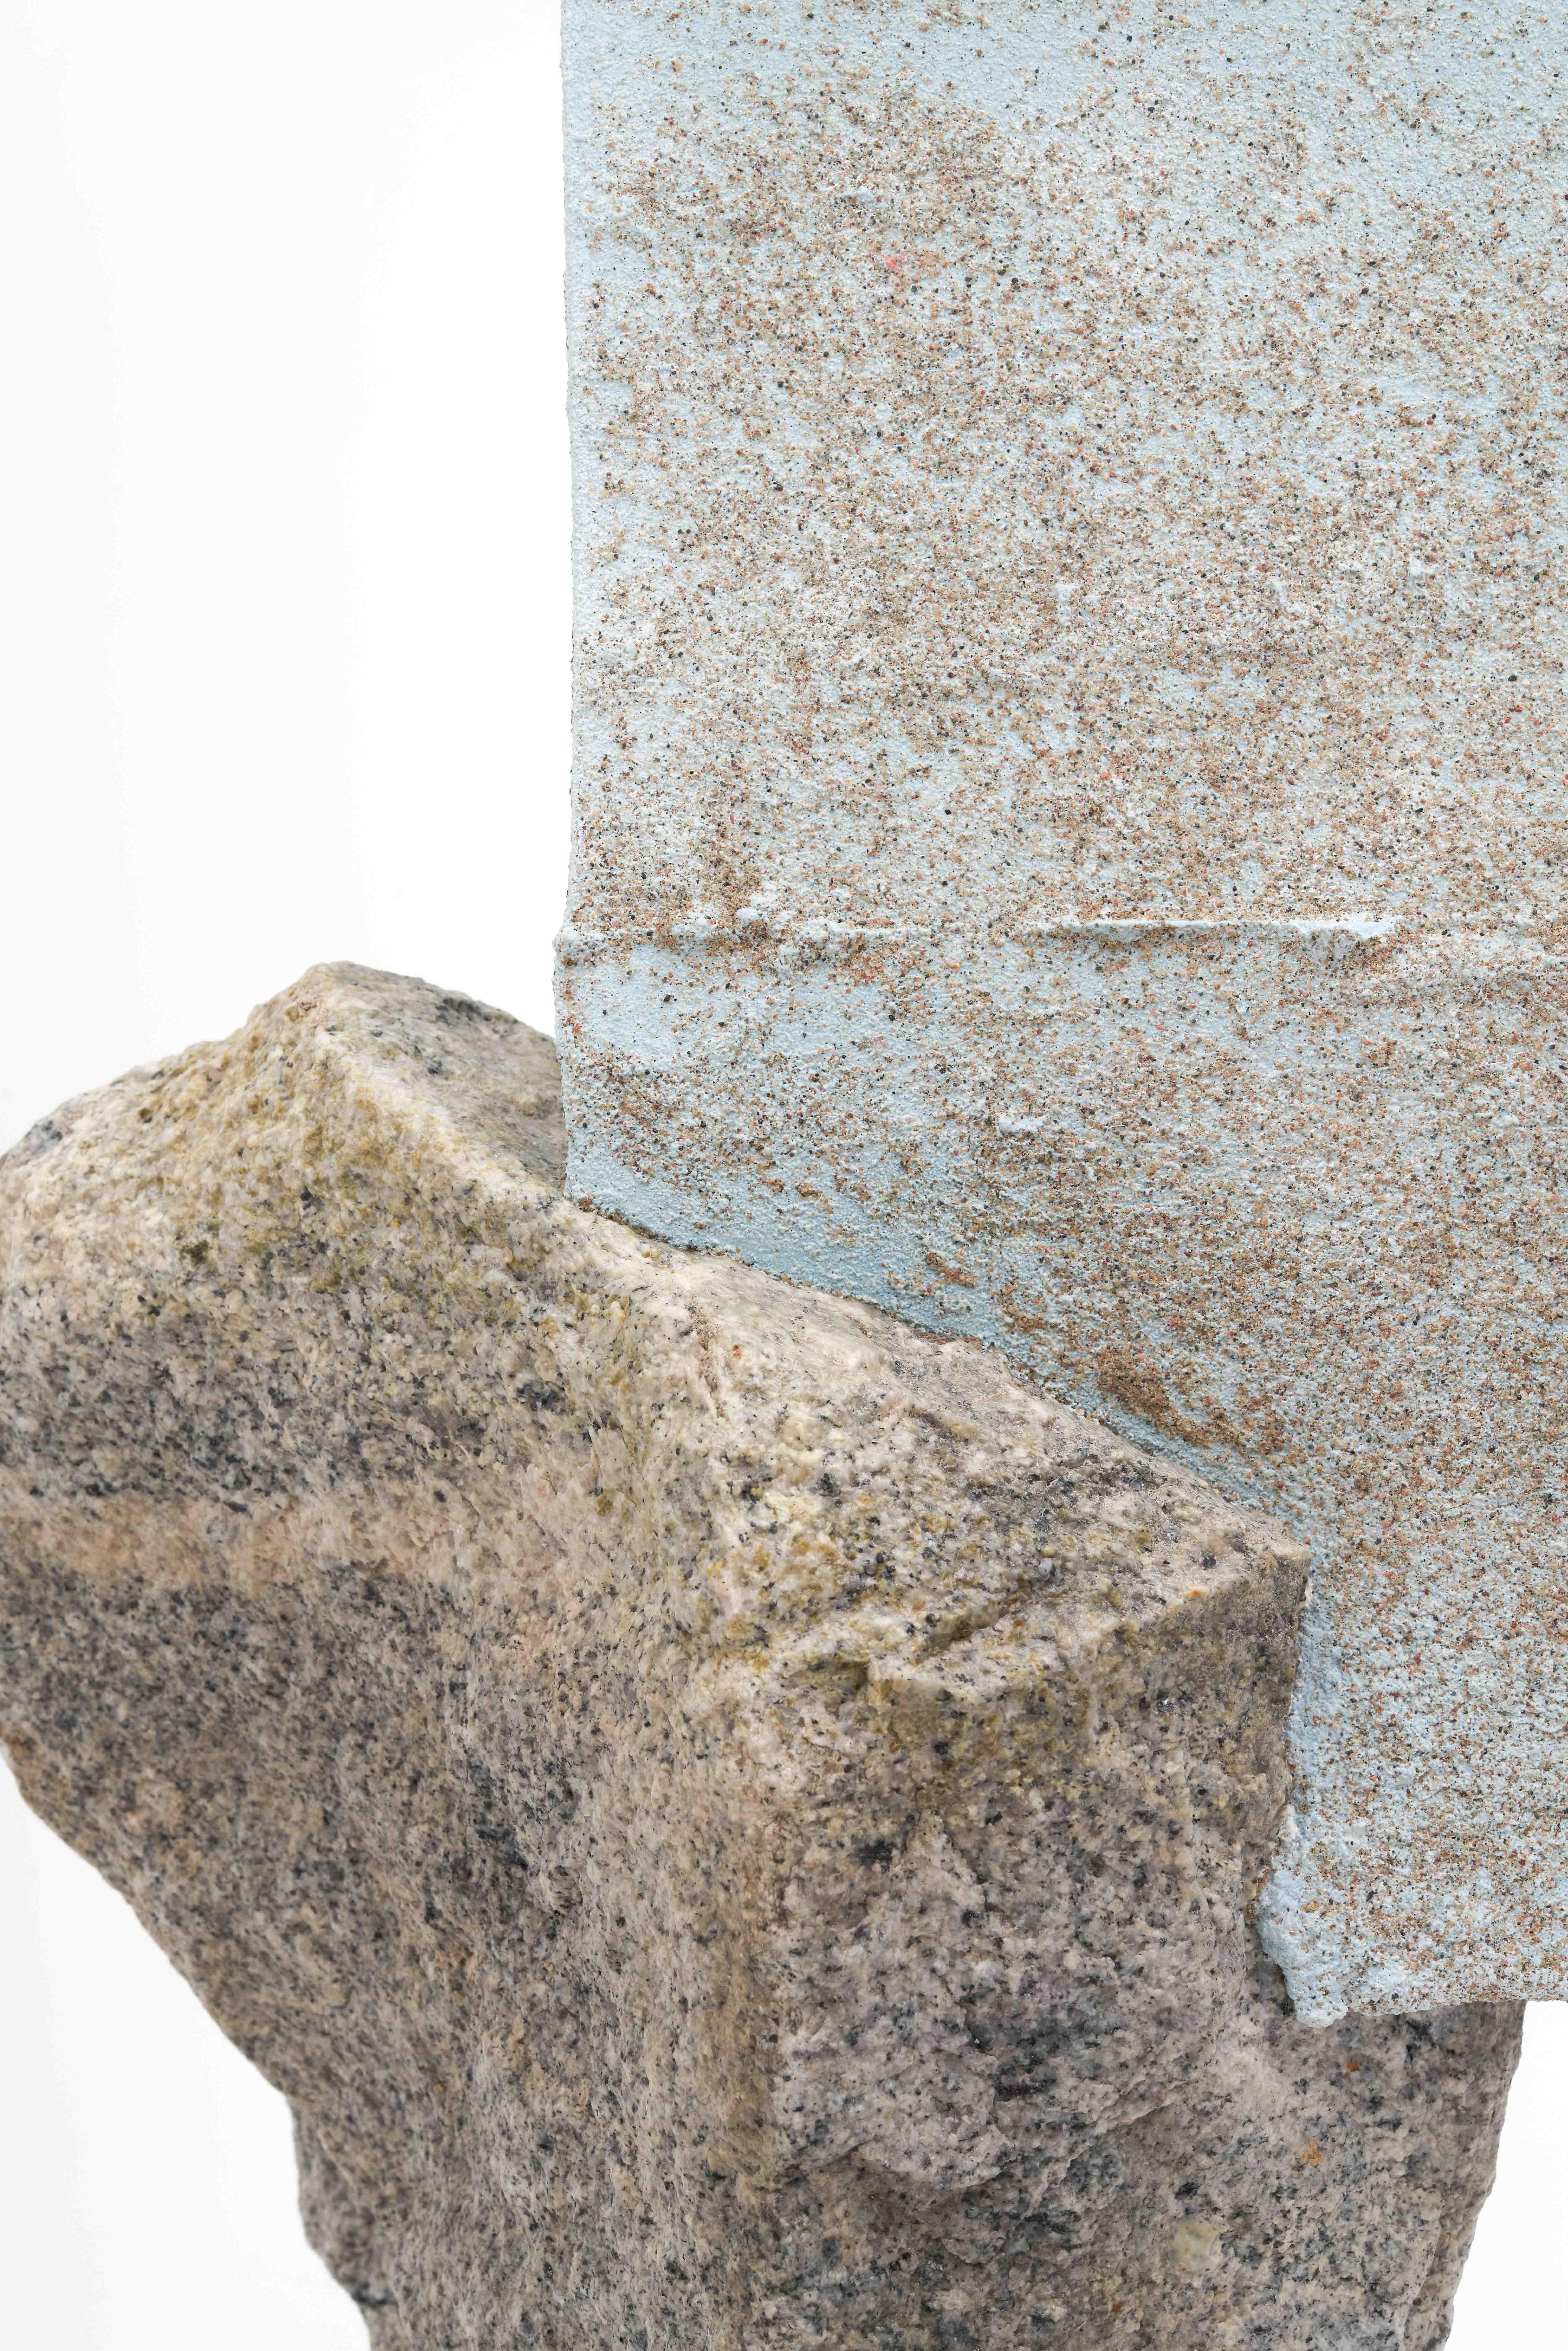 Élément humain, fouille III, 2017
Granit et ciment de gypse
Dimensions : 25 x 21 x 75 cm.
Edition - Ouvrage unique

Human Element